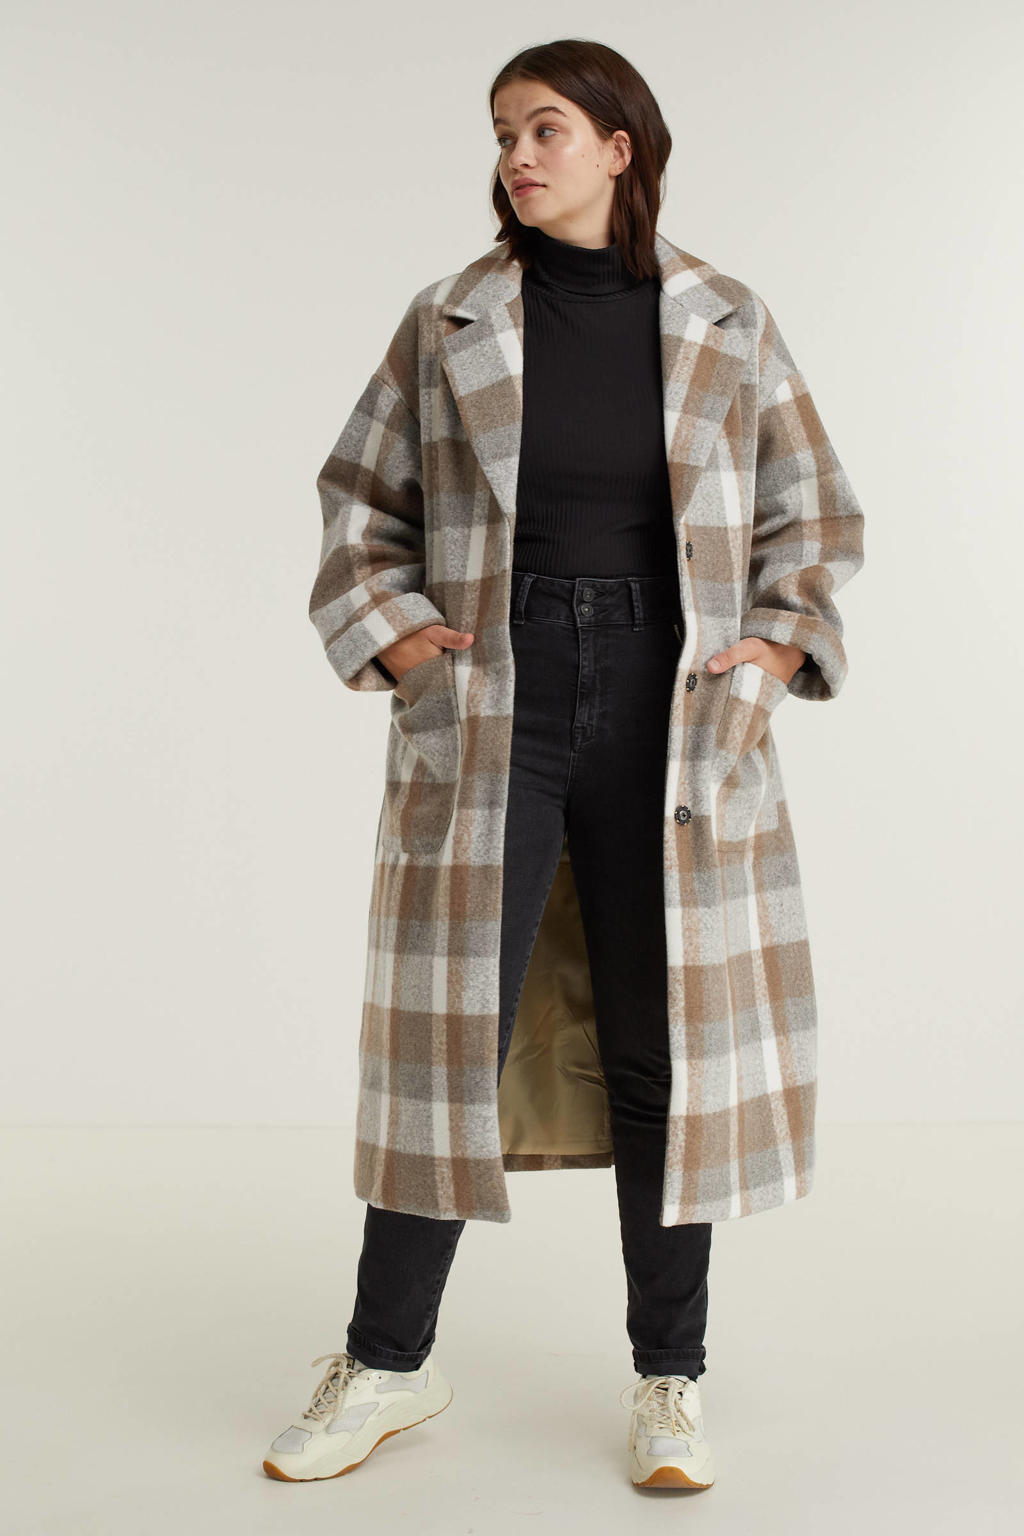 Bruin, grijs en ecru dames Exxcellent geruite coat Pim van polyester met lange mouwen, reverskraag, striksluiting en ceintuur